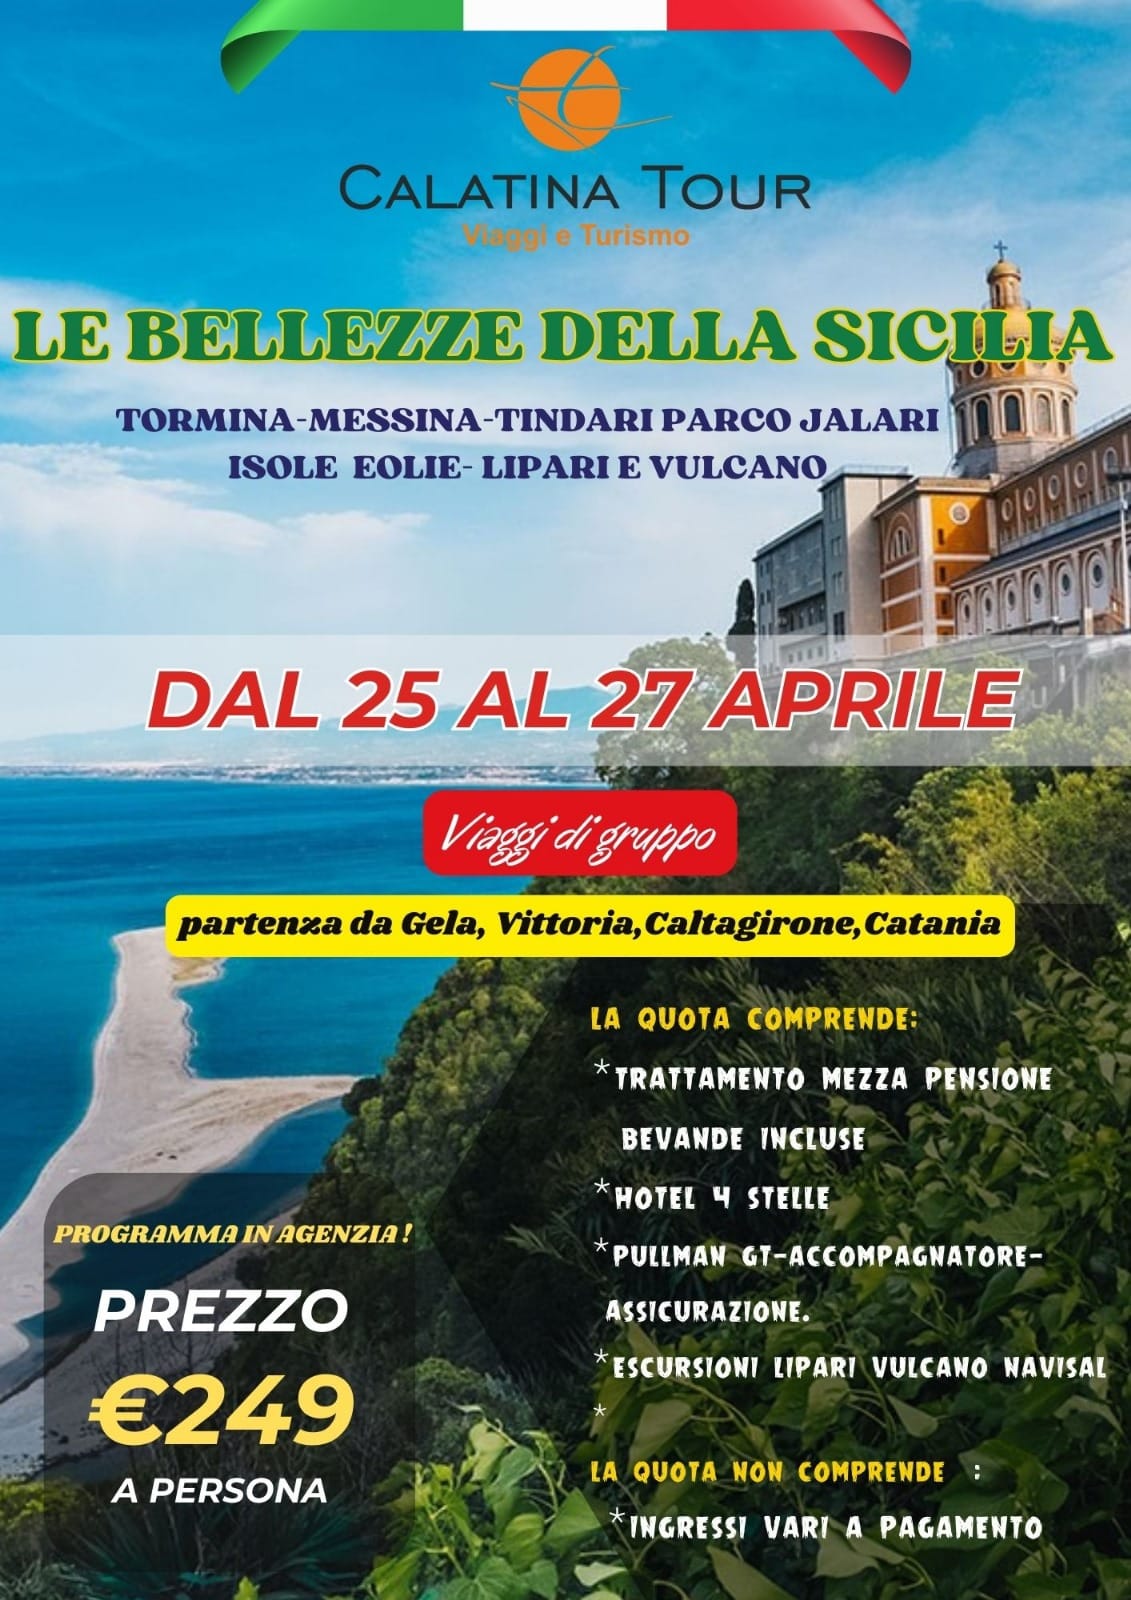 TOUR-SICILIA CALTAGIRONE - Commemorazione dell'80° anniversario dell’eccidio delle Fosse Ardeatine: Onore a Rosario Pitrelli